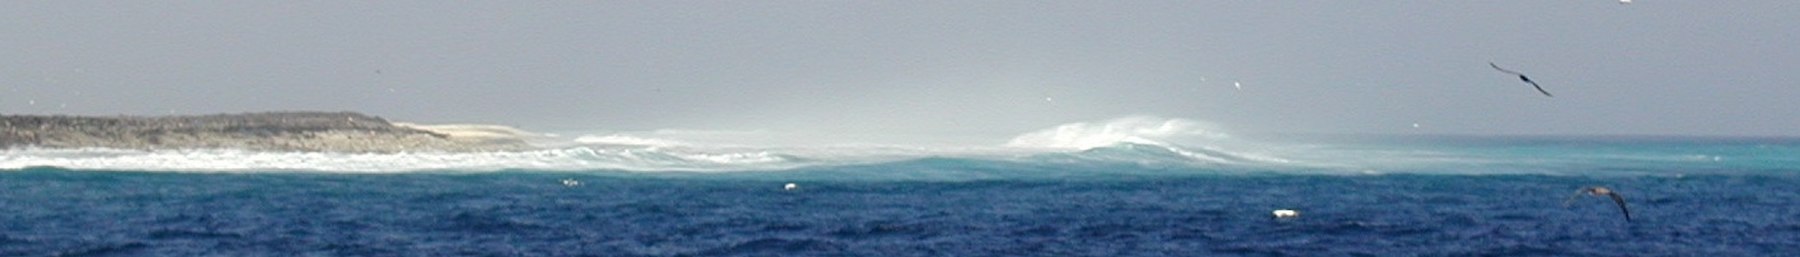 WV banner Clipperton Waves.jpg